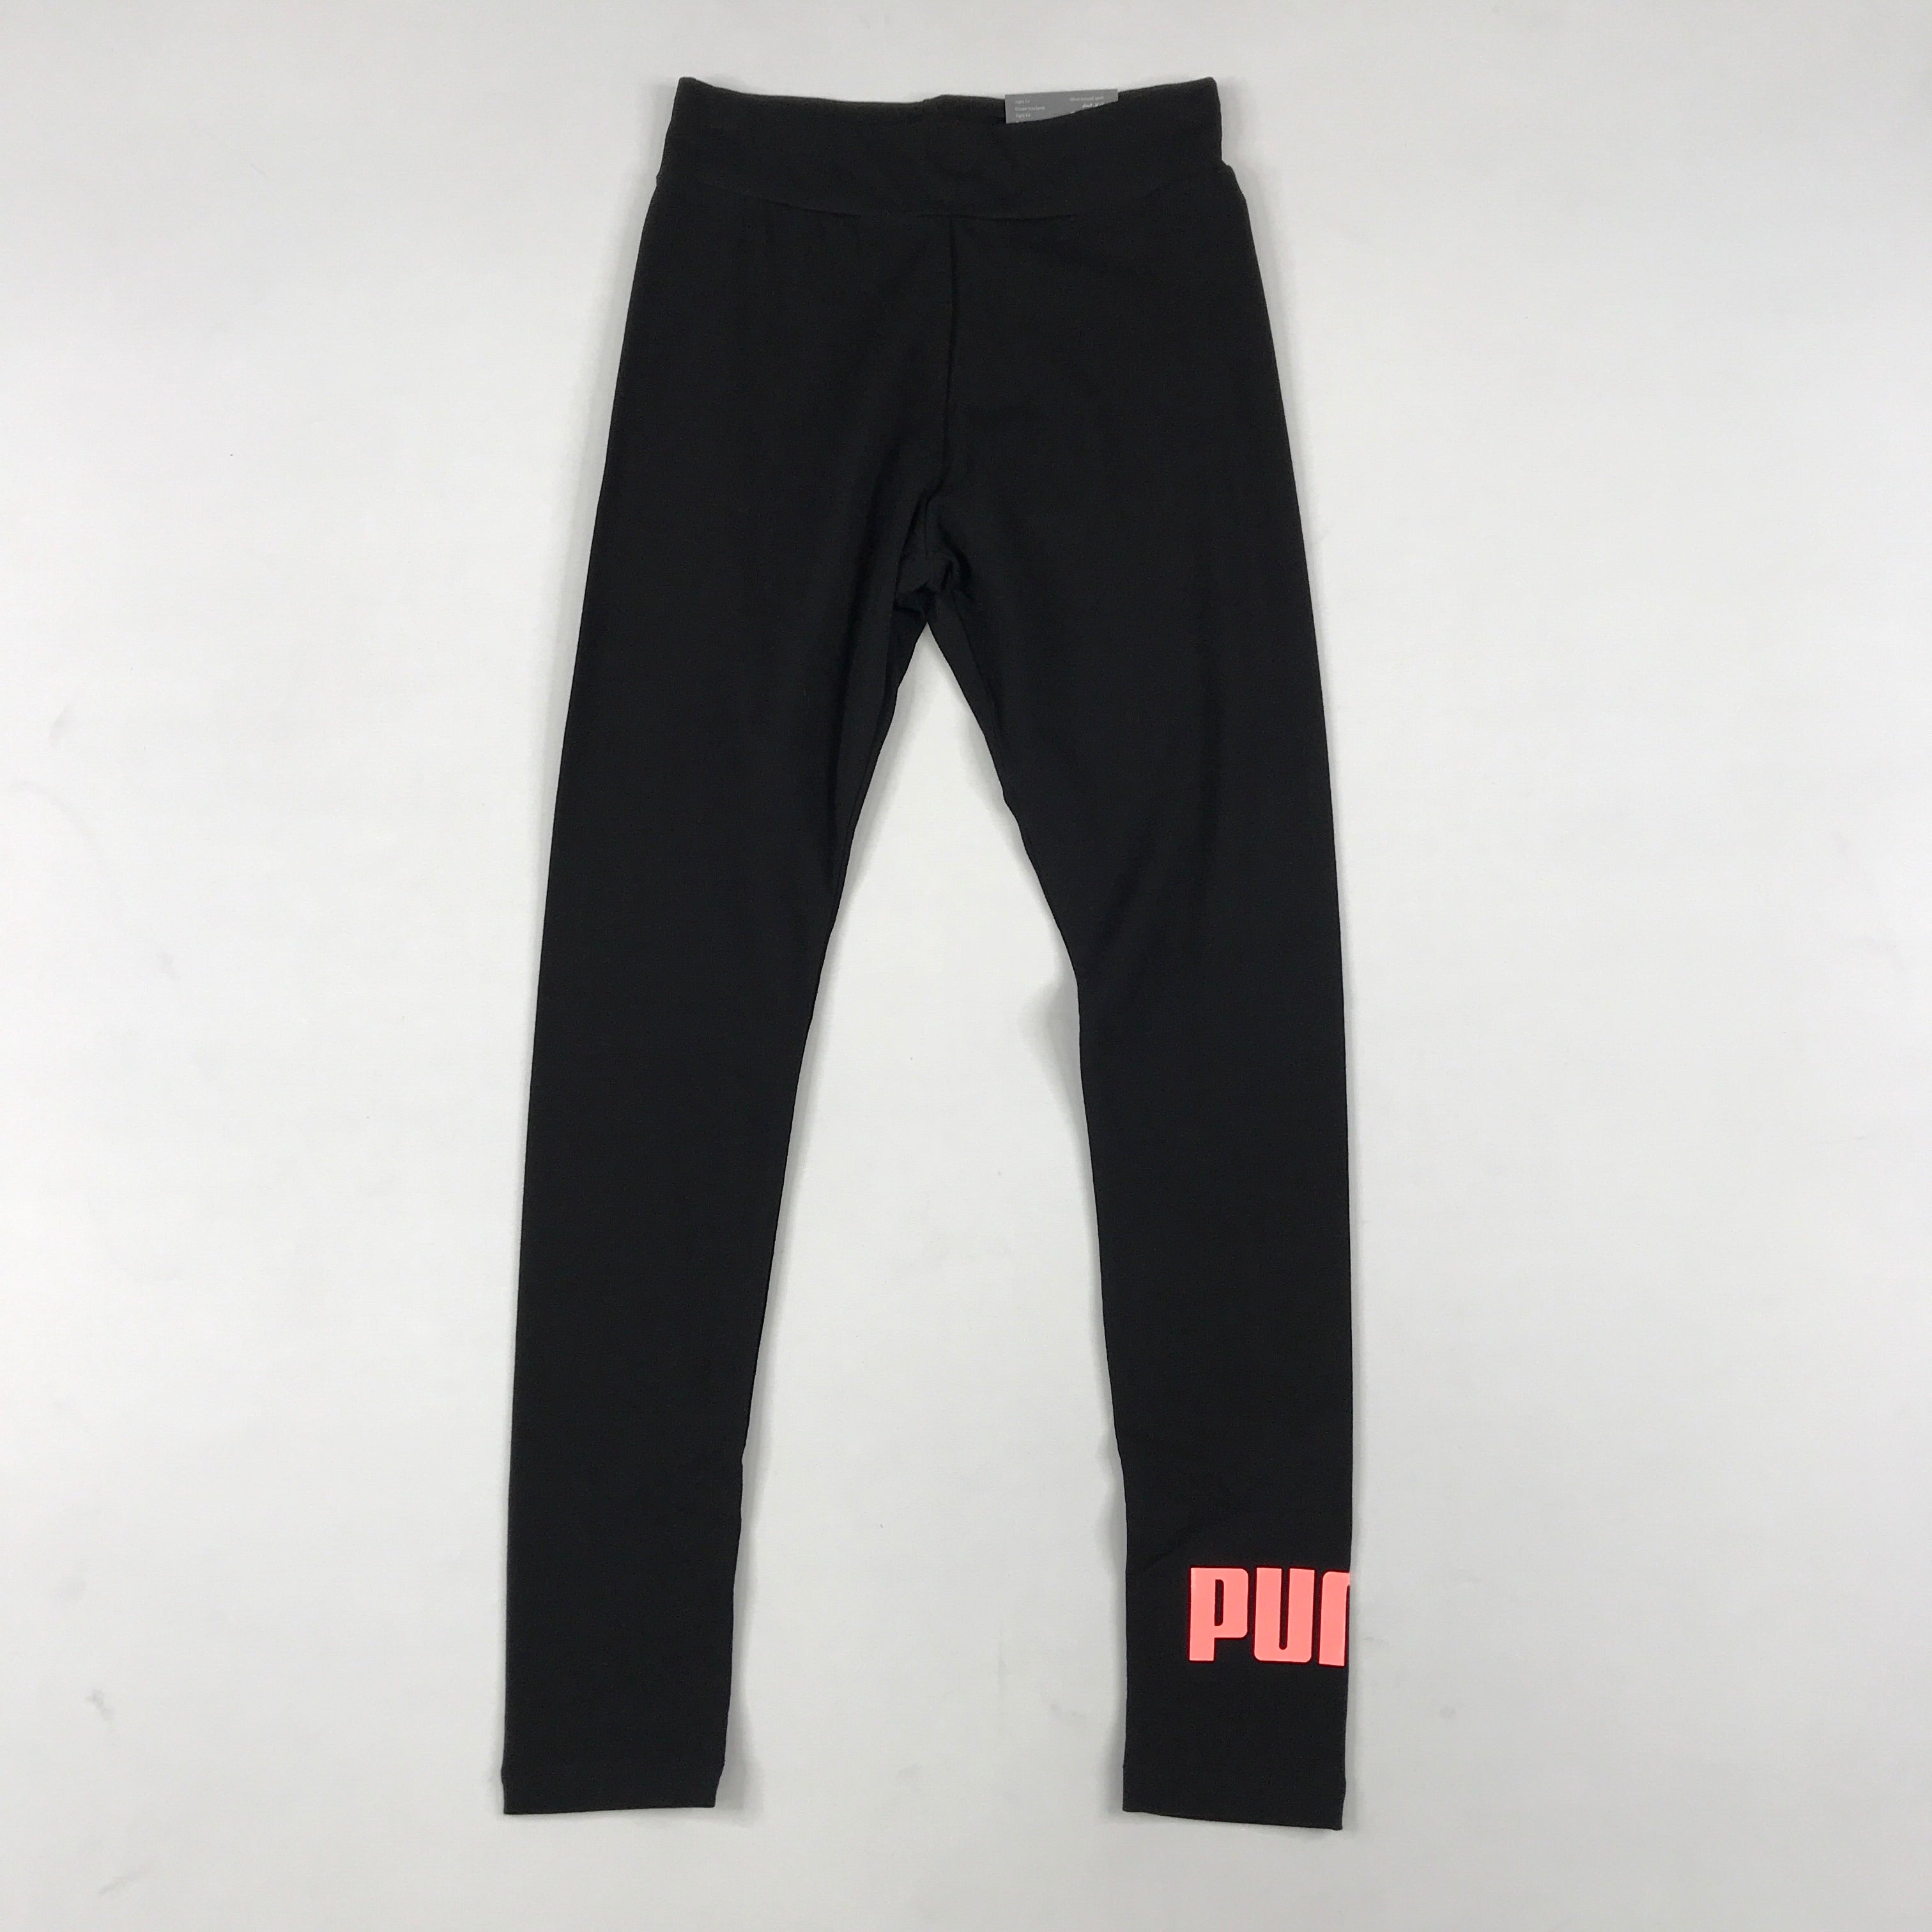 Puma essentials leggings in black-nrgy peach